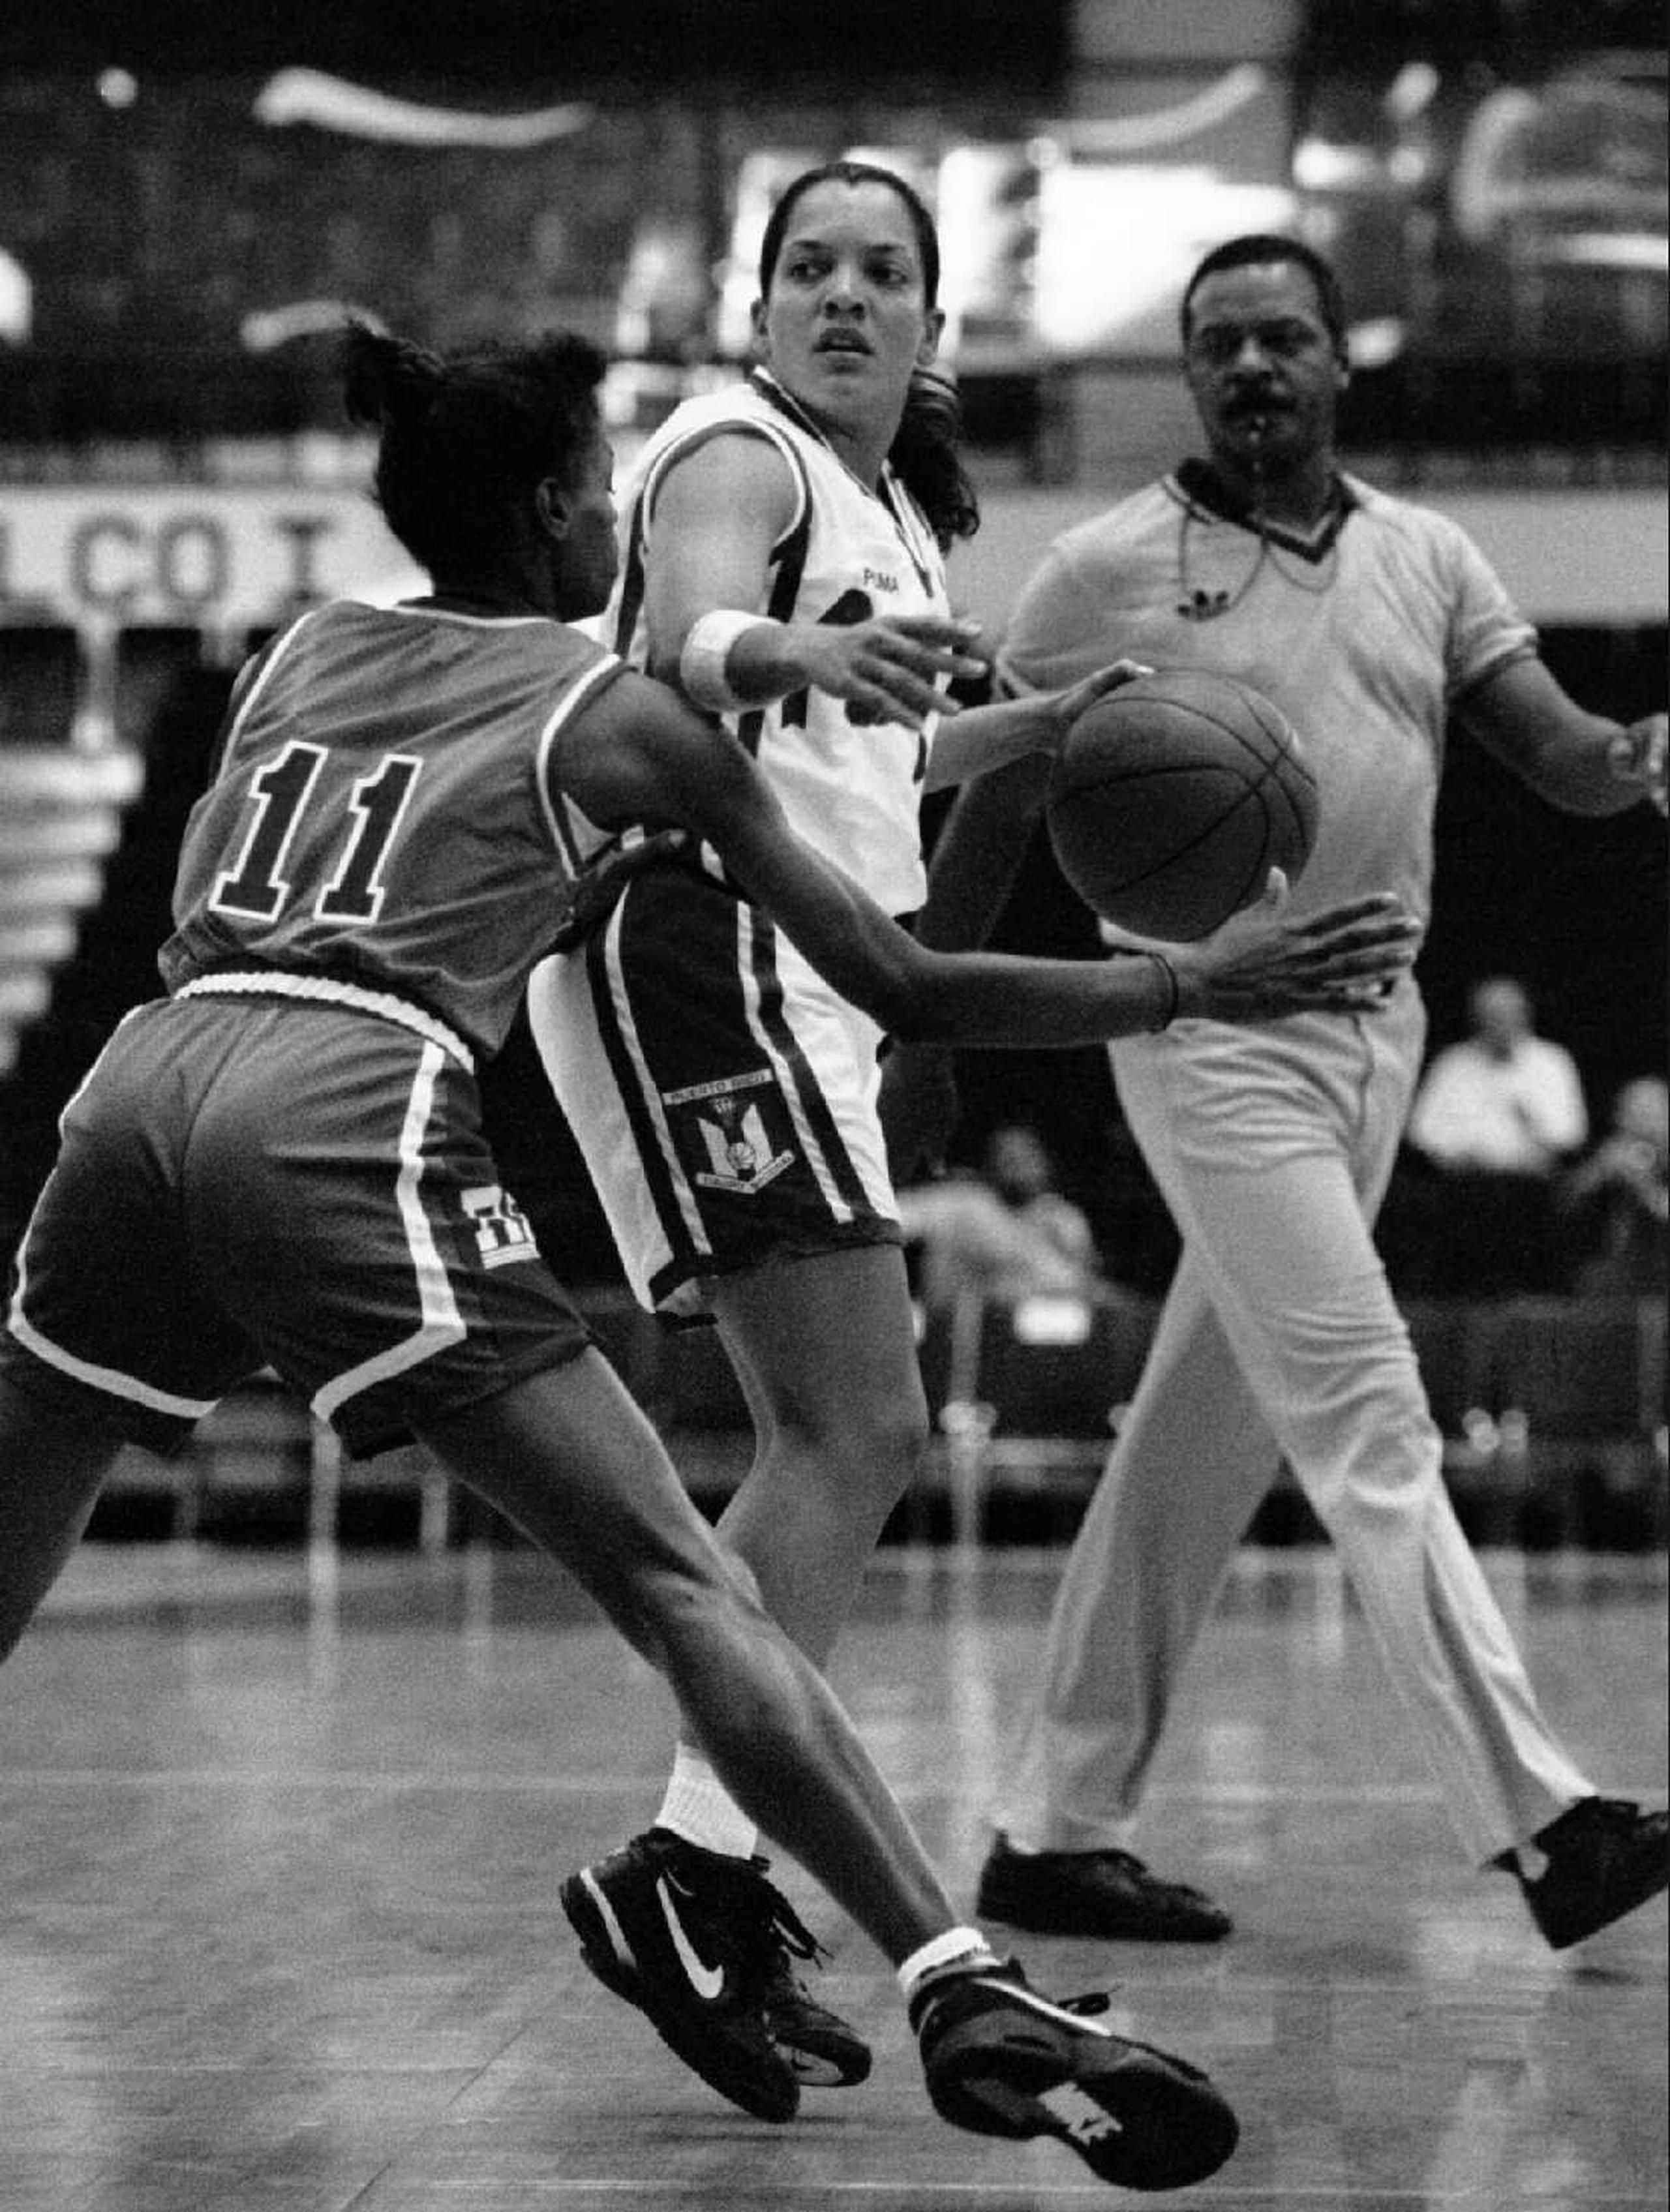 Abajo, María ‘Cusa’ Rivera, con el balón, durante un partido del Centrobasket celebrado en Ponce en 1993. (Archivo / GFR Media)